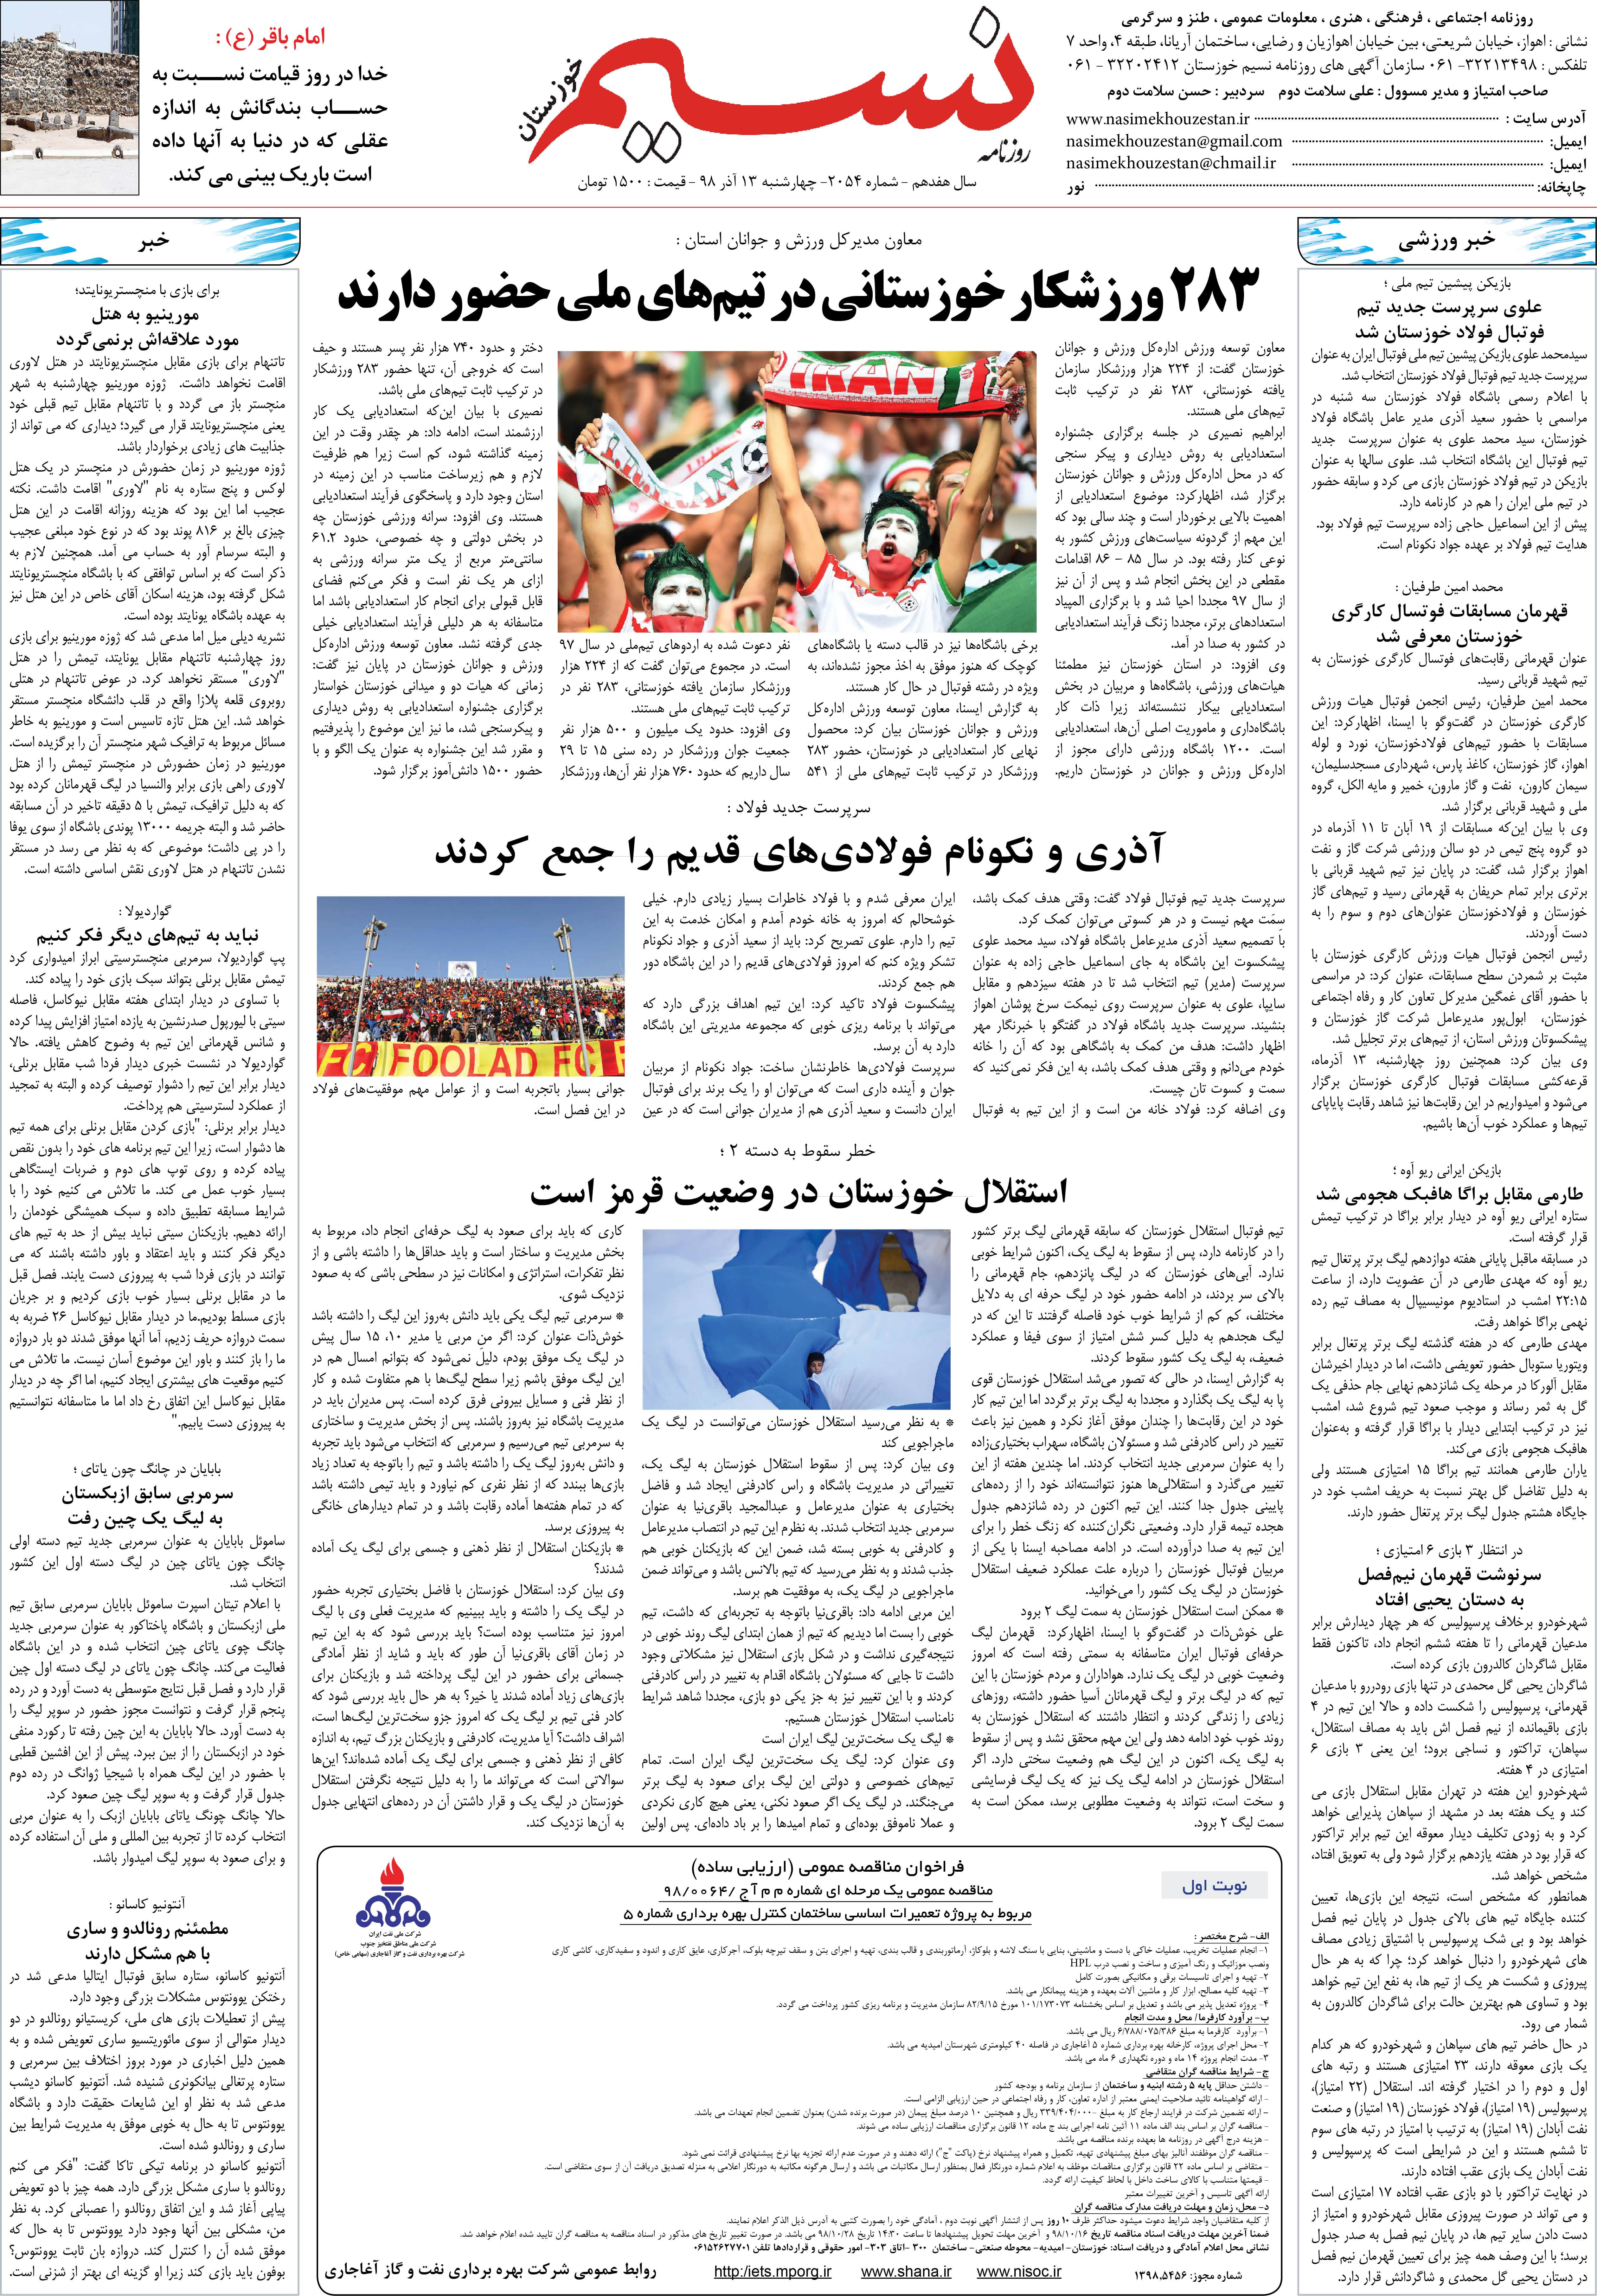 صفحه آخر روزنامه نسیم شماره 2054